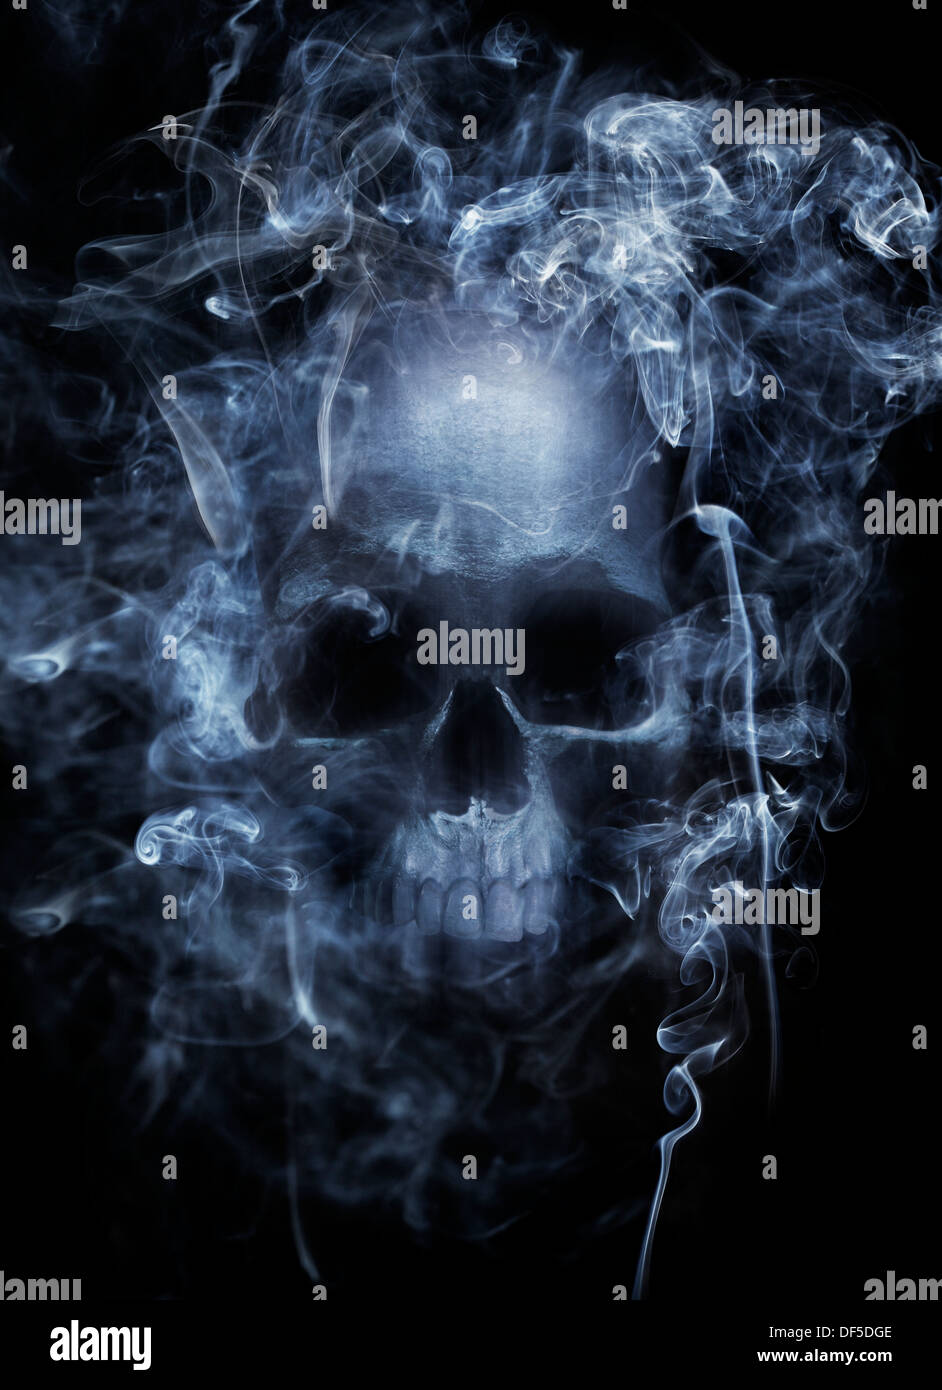 Montage photo d'un crâne humain entouré de fumée de cigarette. Banque D'Images